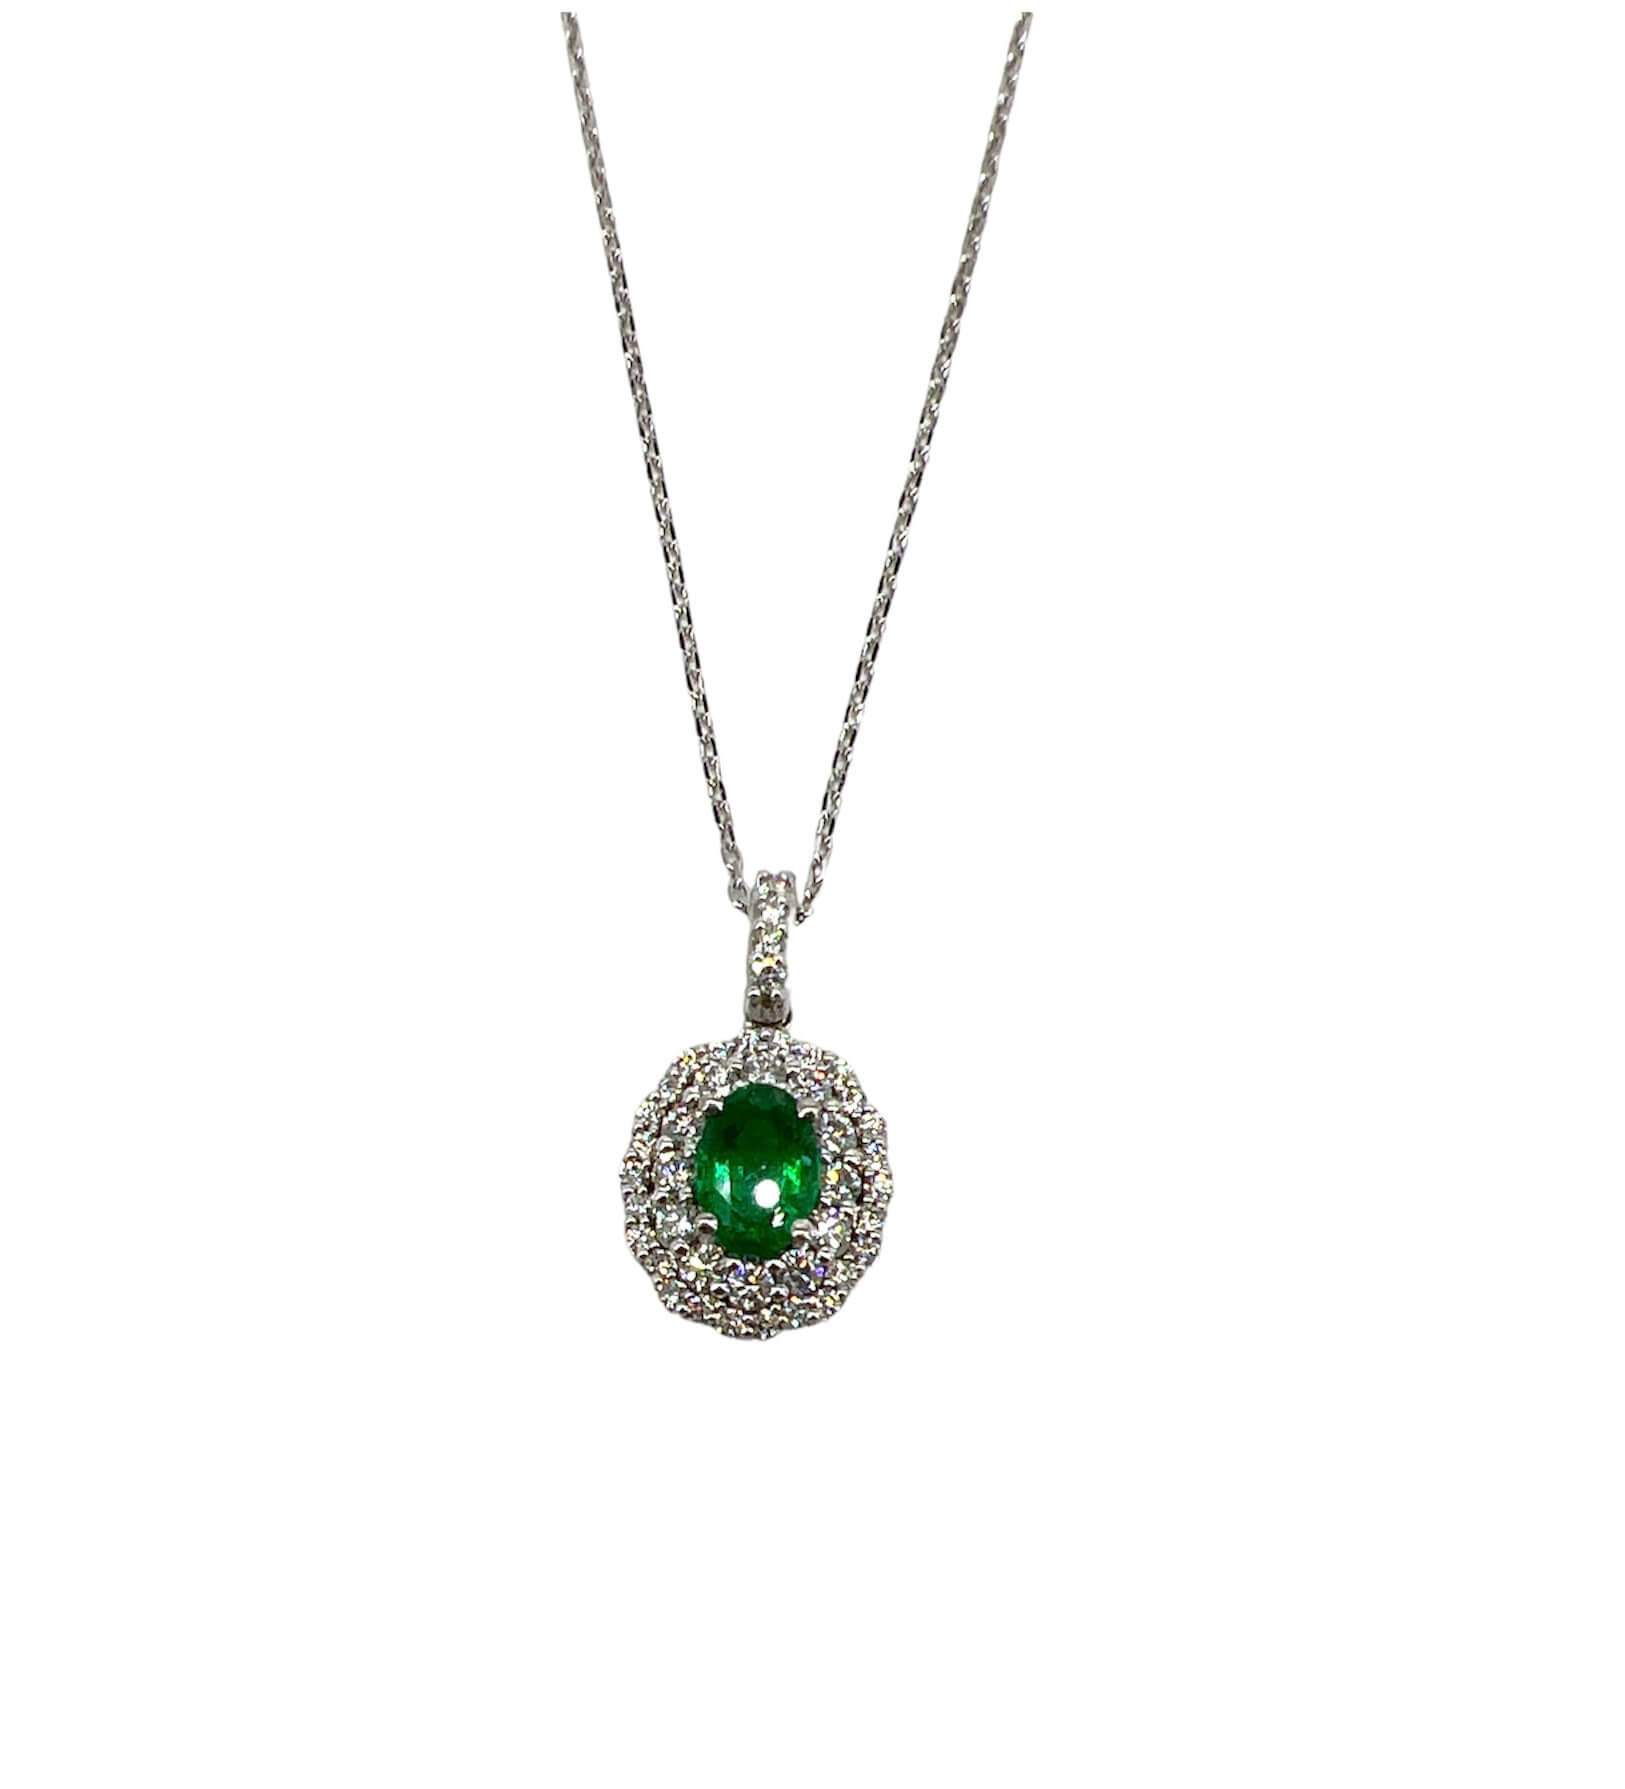 Emerald pendant white gold 750% BELLE EPOQUE Art. CD239